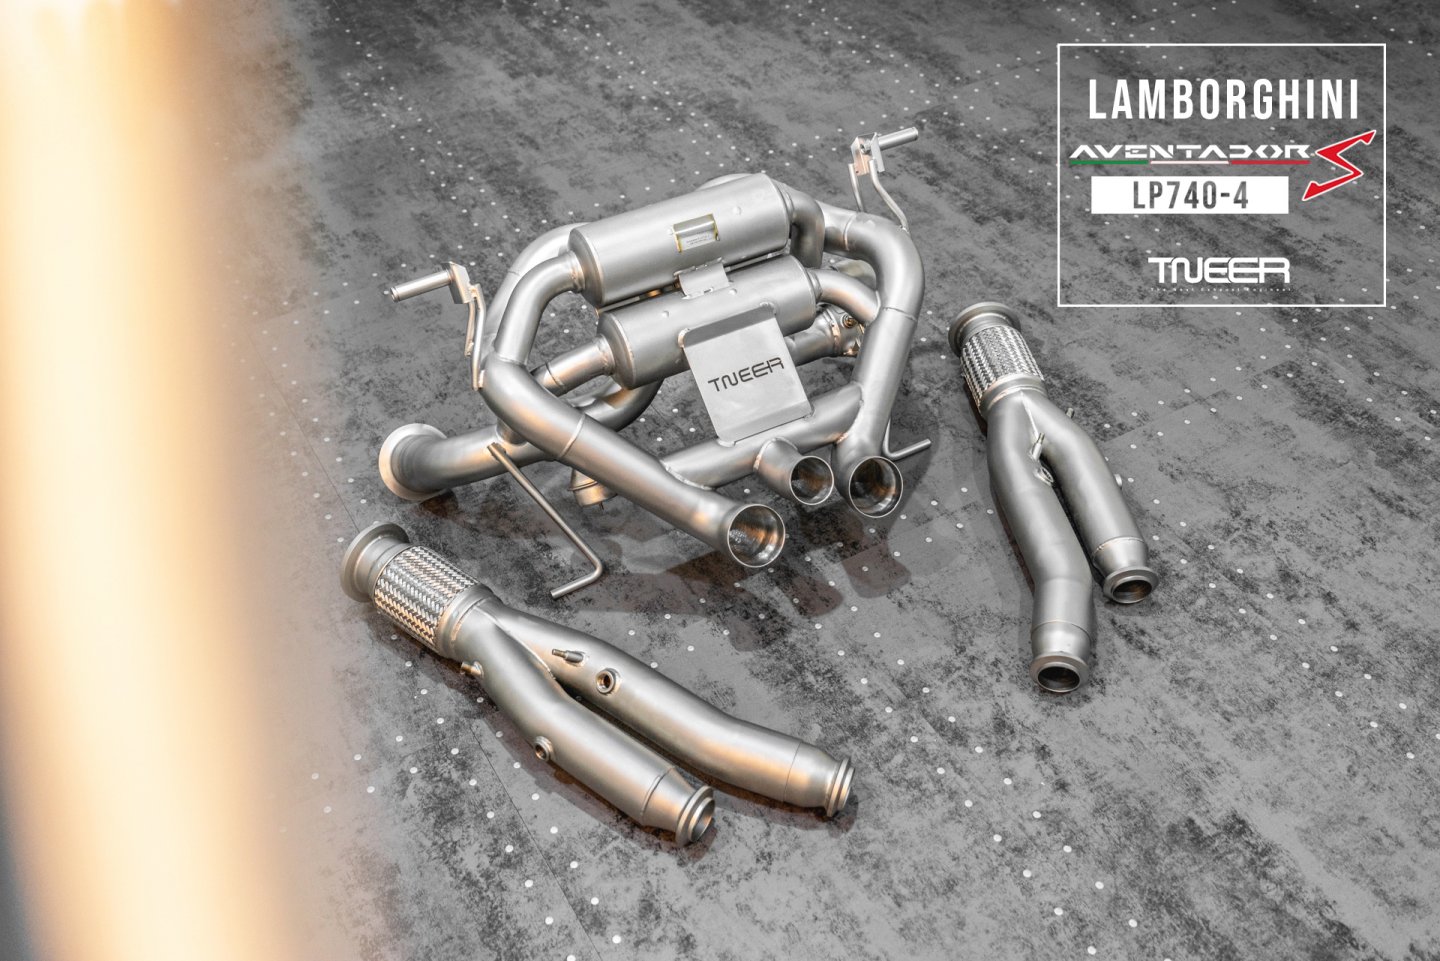 Lamborghini Aventador S LP740-4 TNEER Exhaust System